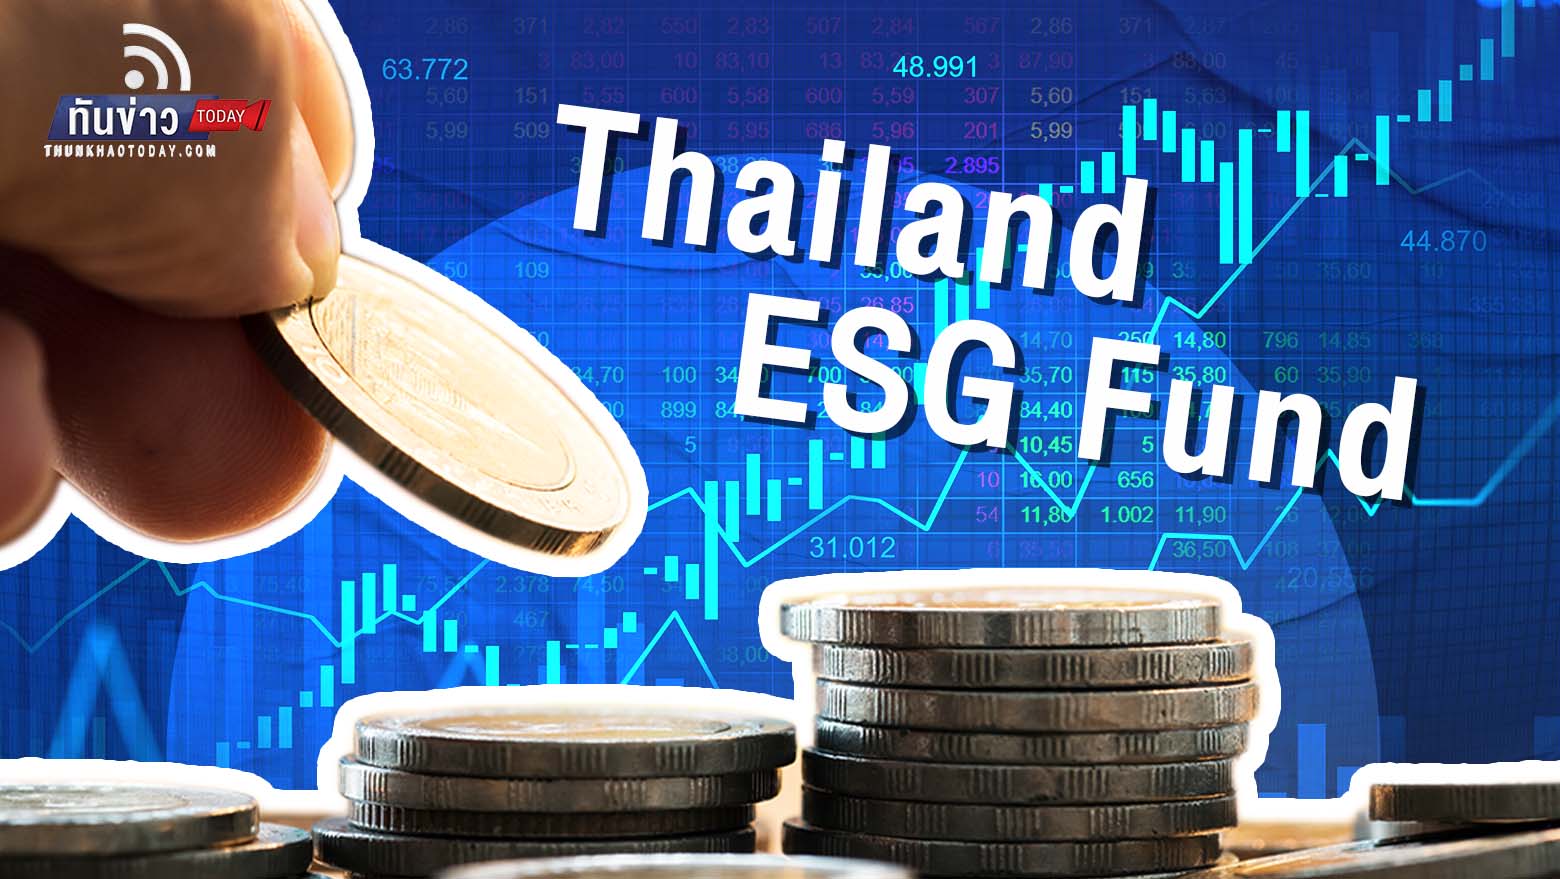 ก.ล.ต. ไฟเขียวเปิดให้ บลจ. เสนอขาย Thailand ESG Fund เดือน ธ.ค.